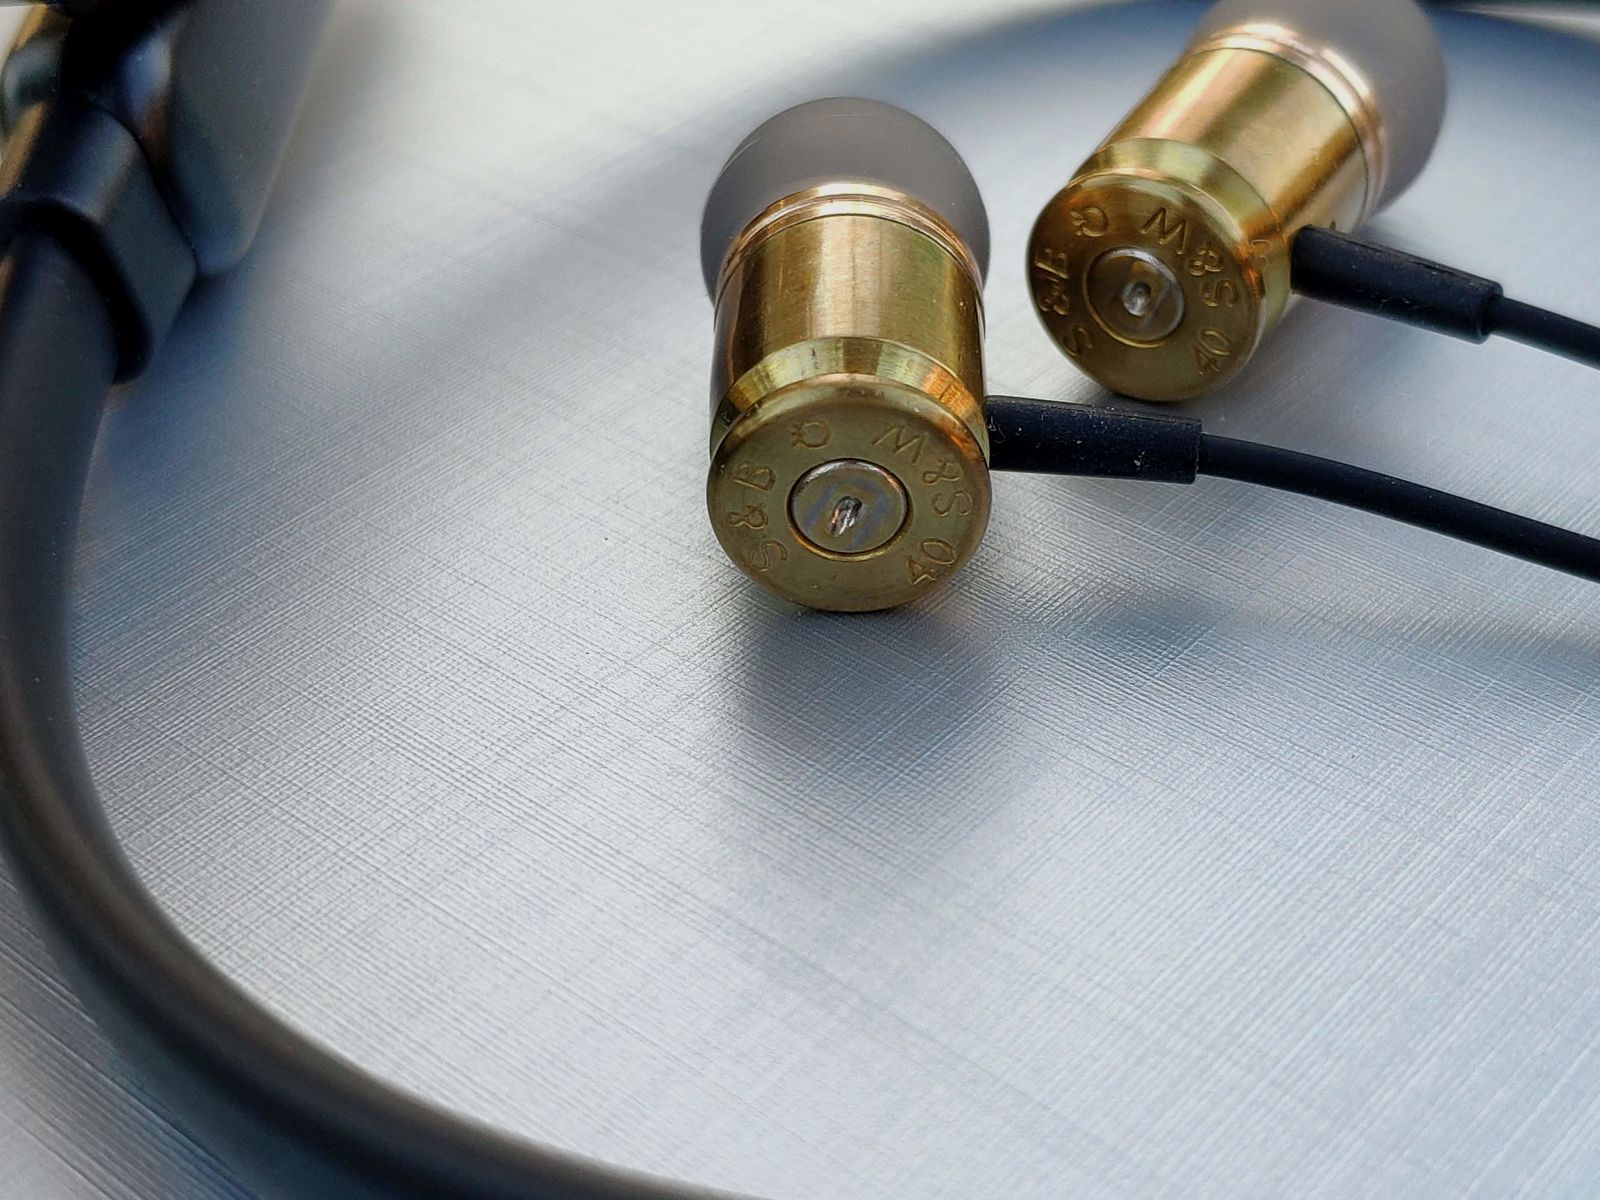 Federal 40 FBI Bluetooth - recenzja słuchawek bezprzewodowych polskiego producenta